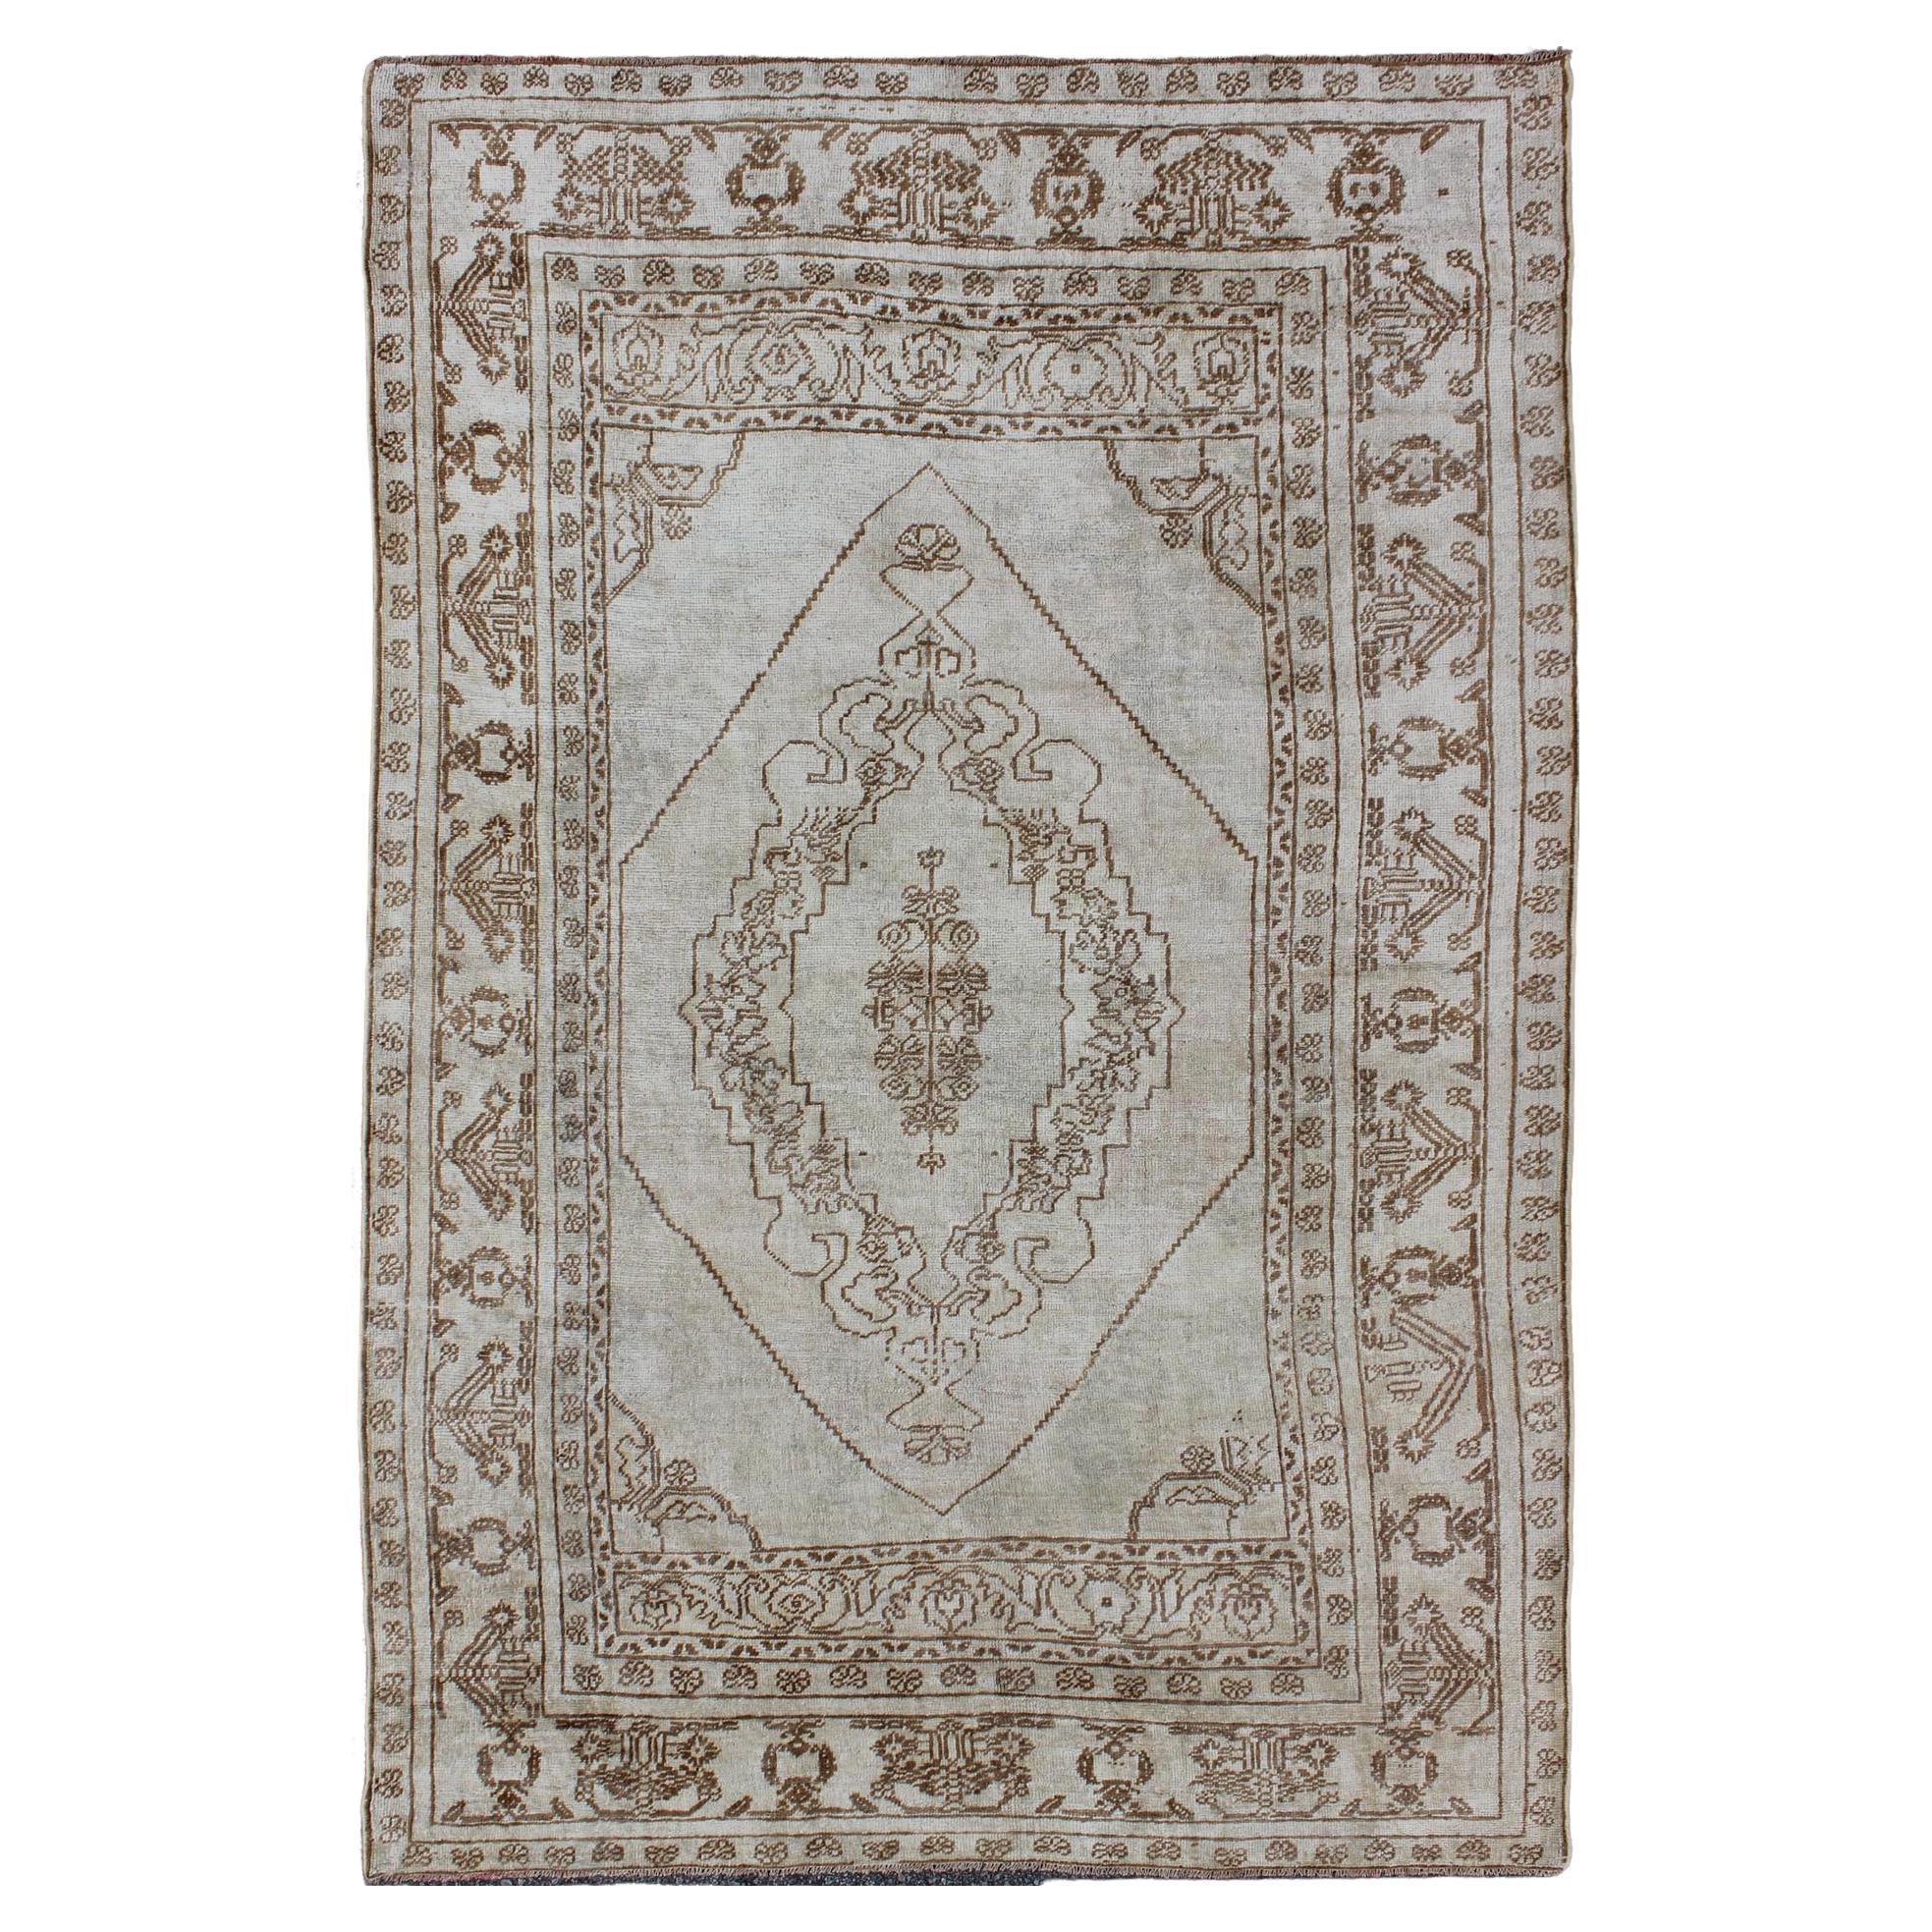 Vintage Turkish Oushak Carpet with Floral Medallion Design in Neutral Tones